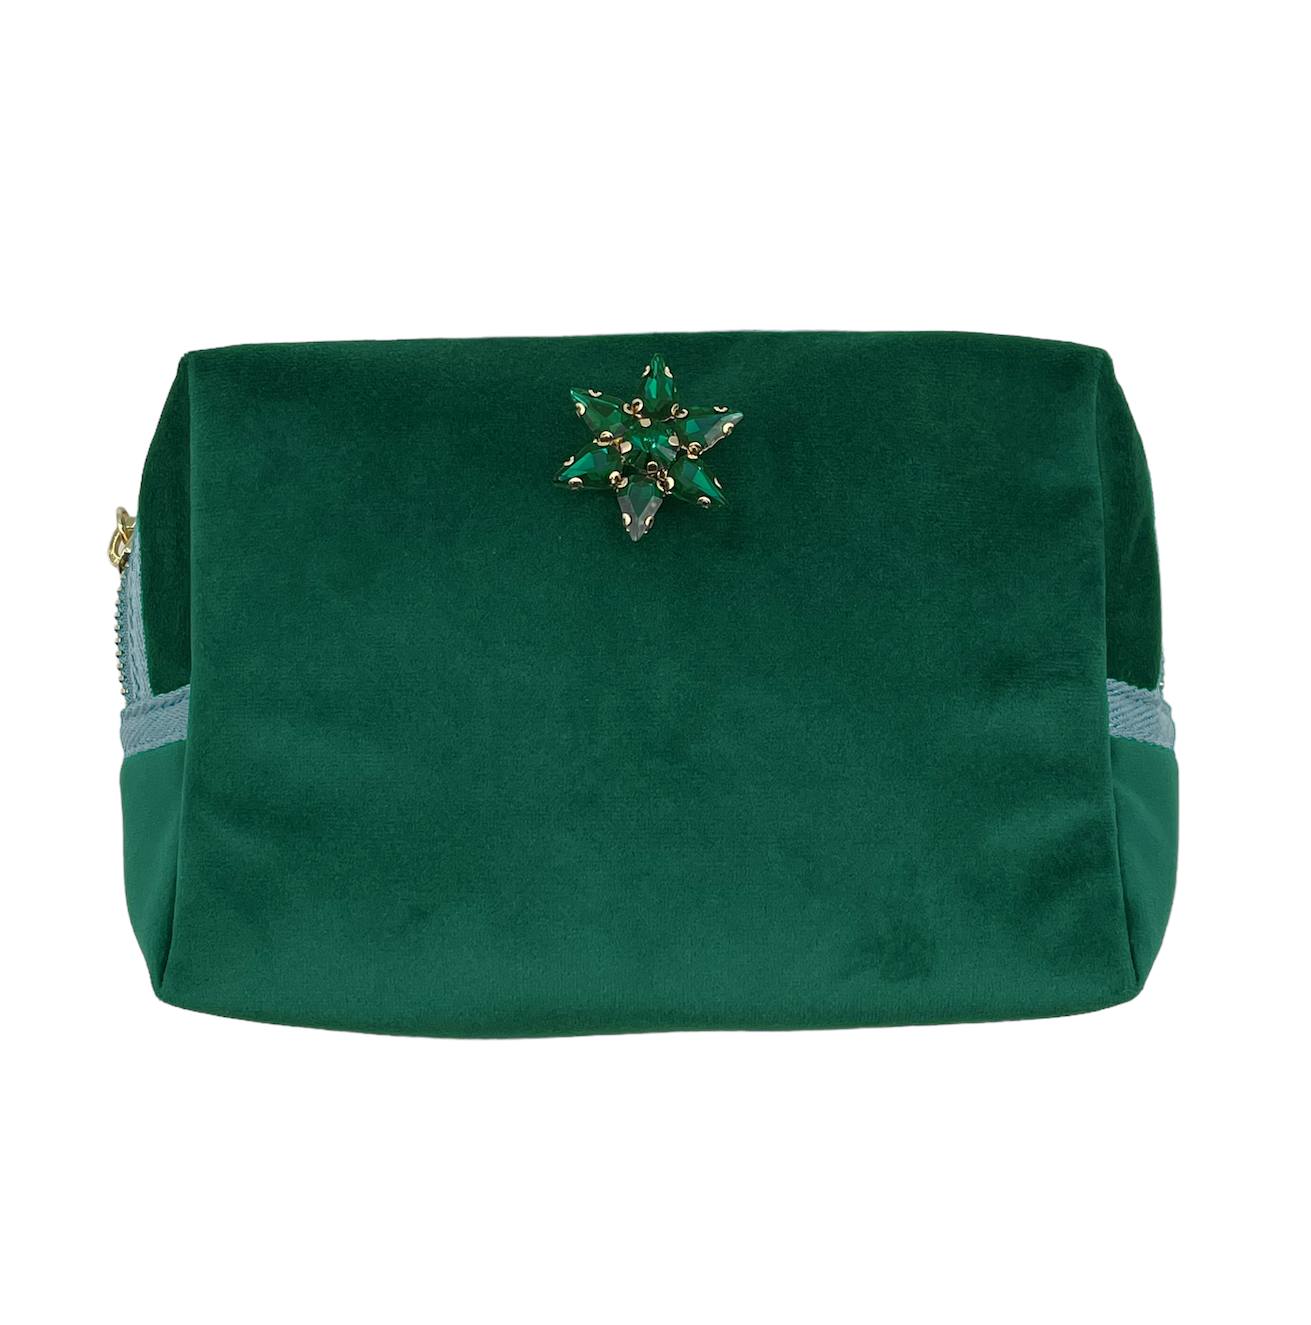 Green make-up bag & sparkle star pin - recycled velvet